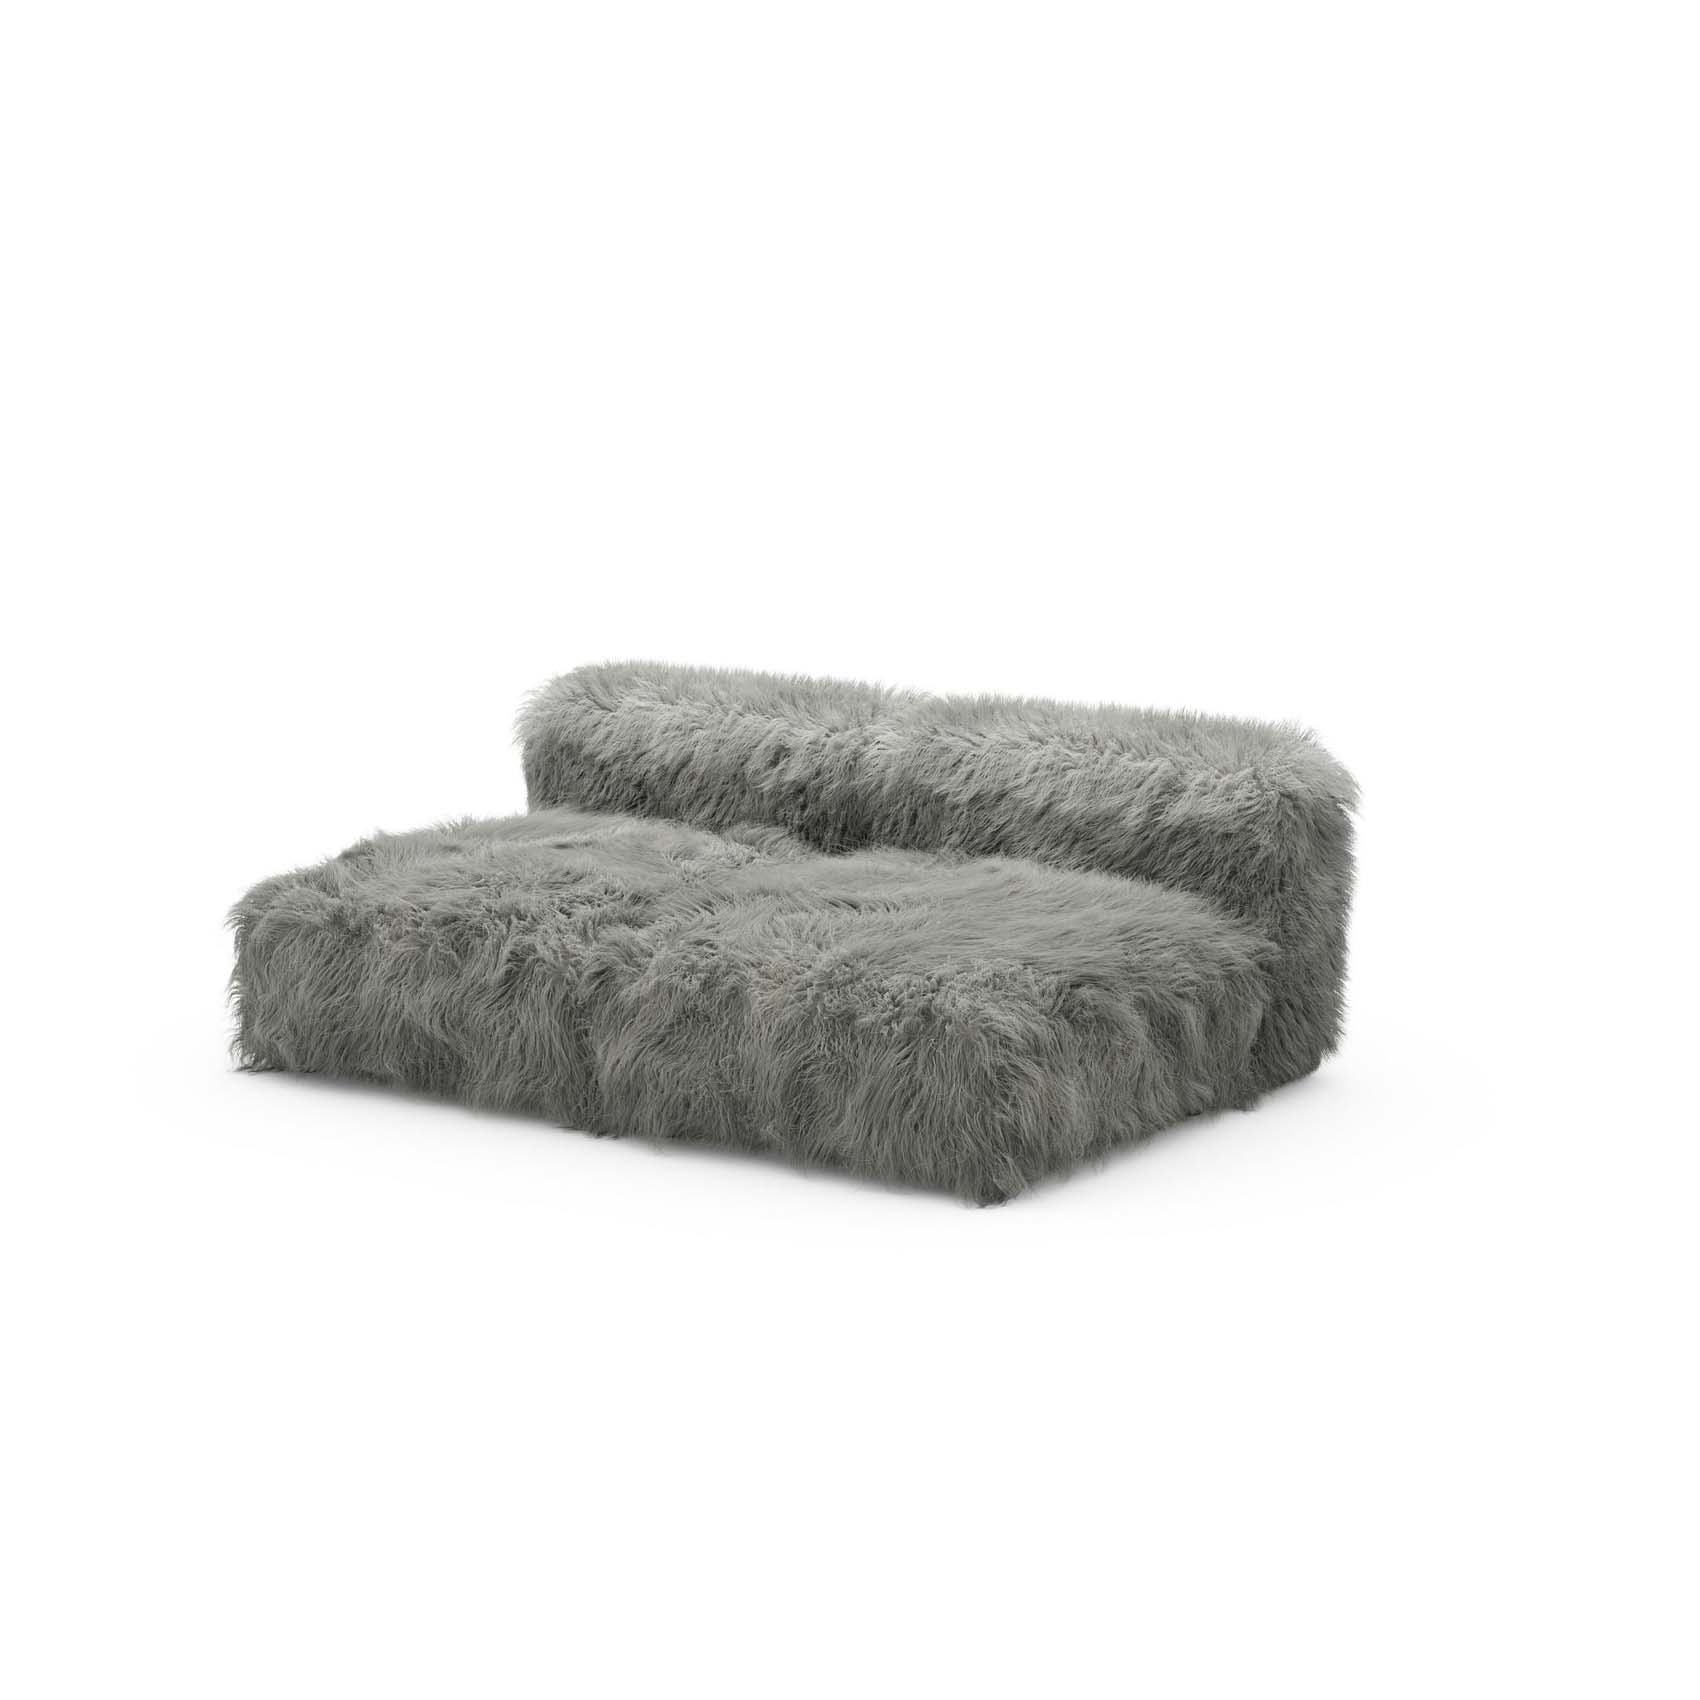 Two Seat Lounge Sofa S Flokati Grey